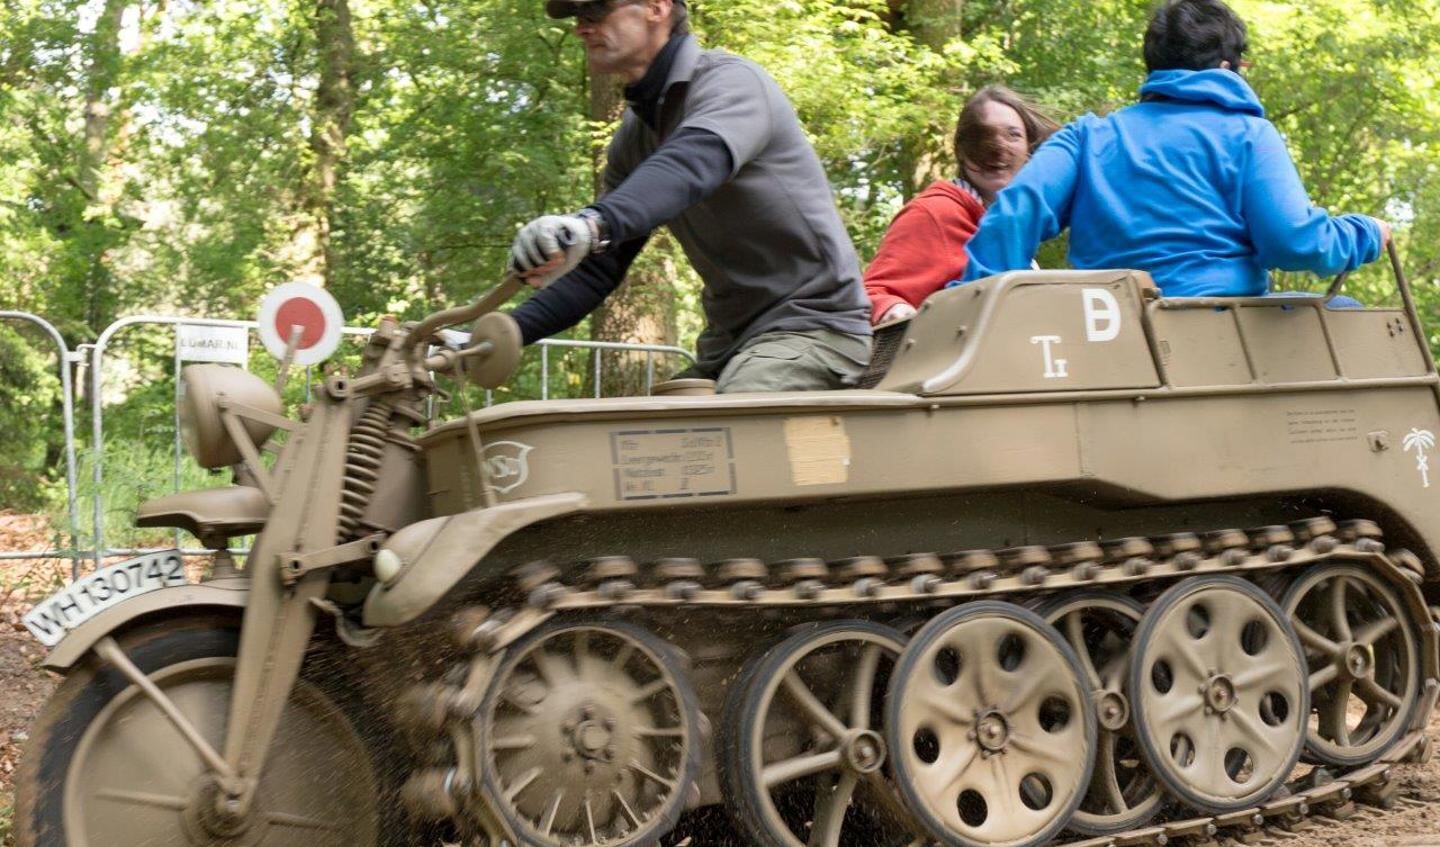 Voormalige Duitse voer- en rijtuigen en oorlogsmachines worden getoond tijdens Militracks. (foto's: Albert Hendriks)